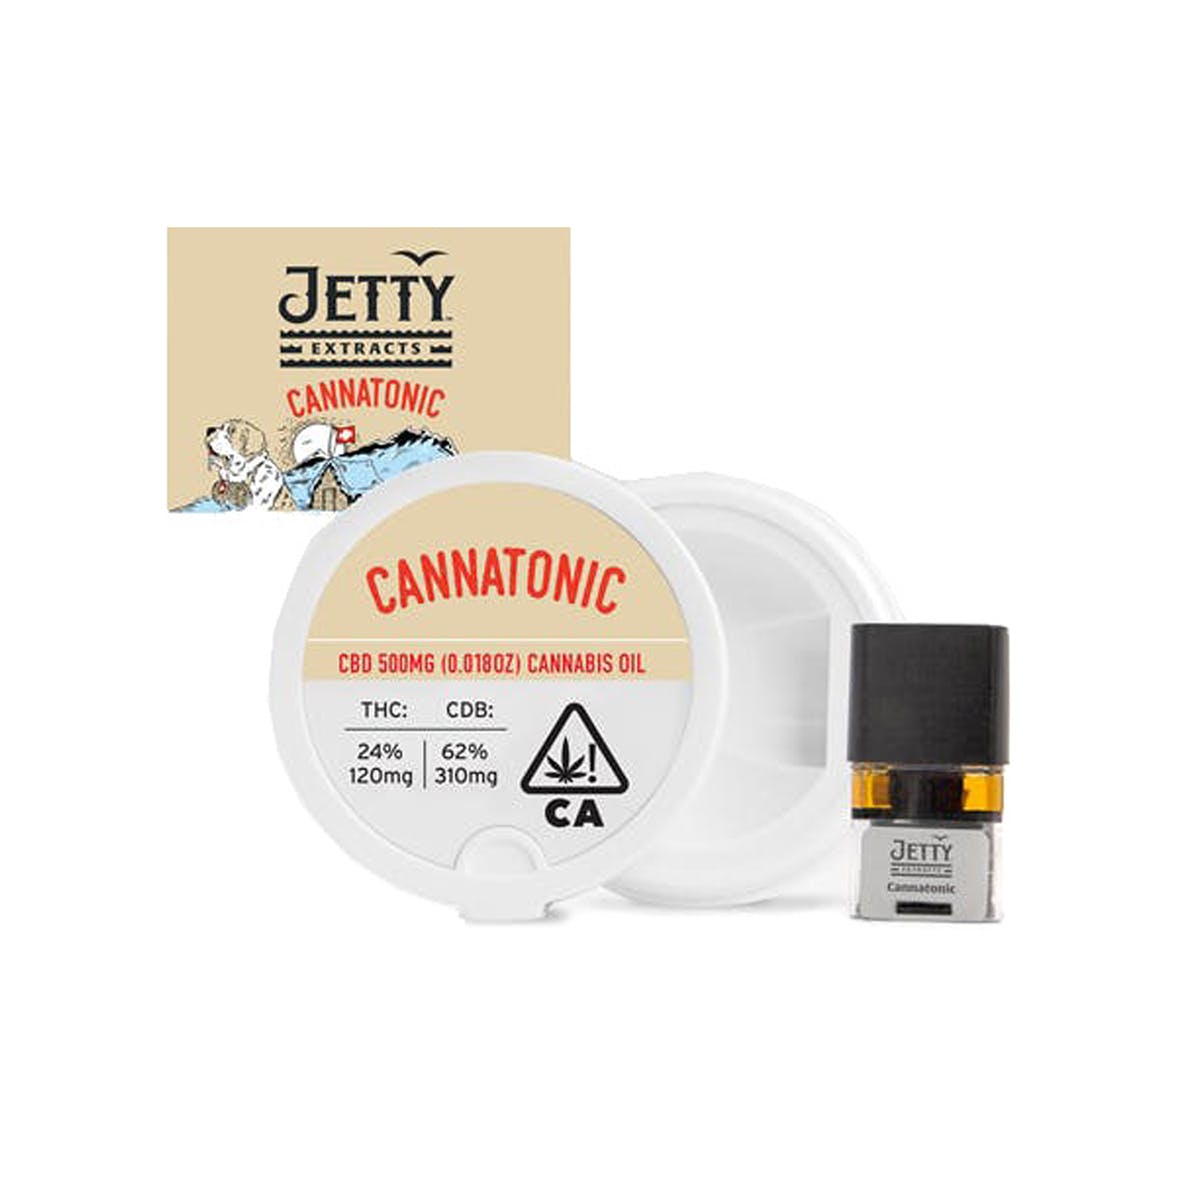 marijuana-dispensaries-super-clinik-east-santa-ana-in-santa-ana-pax-era-pod-jetty-extracts-cannatonic-31